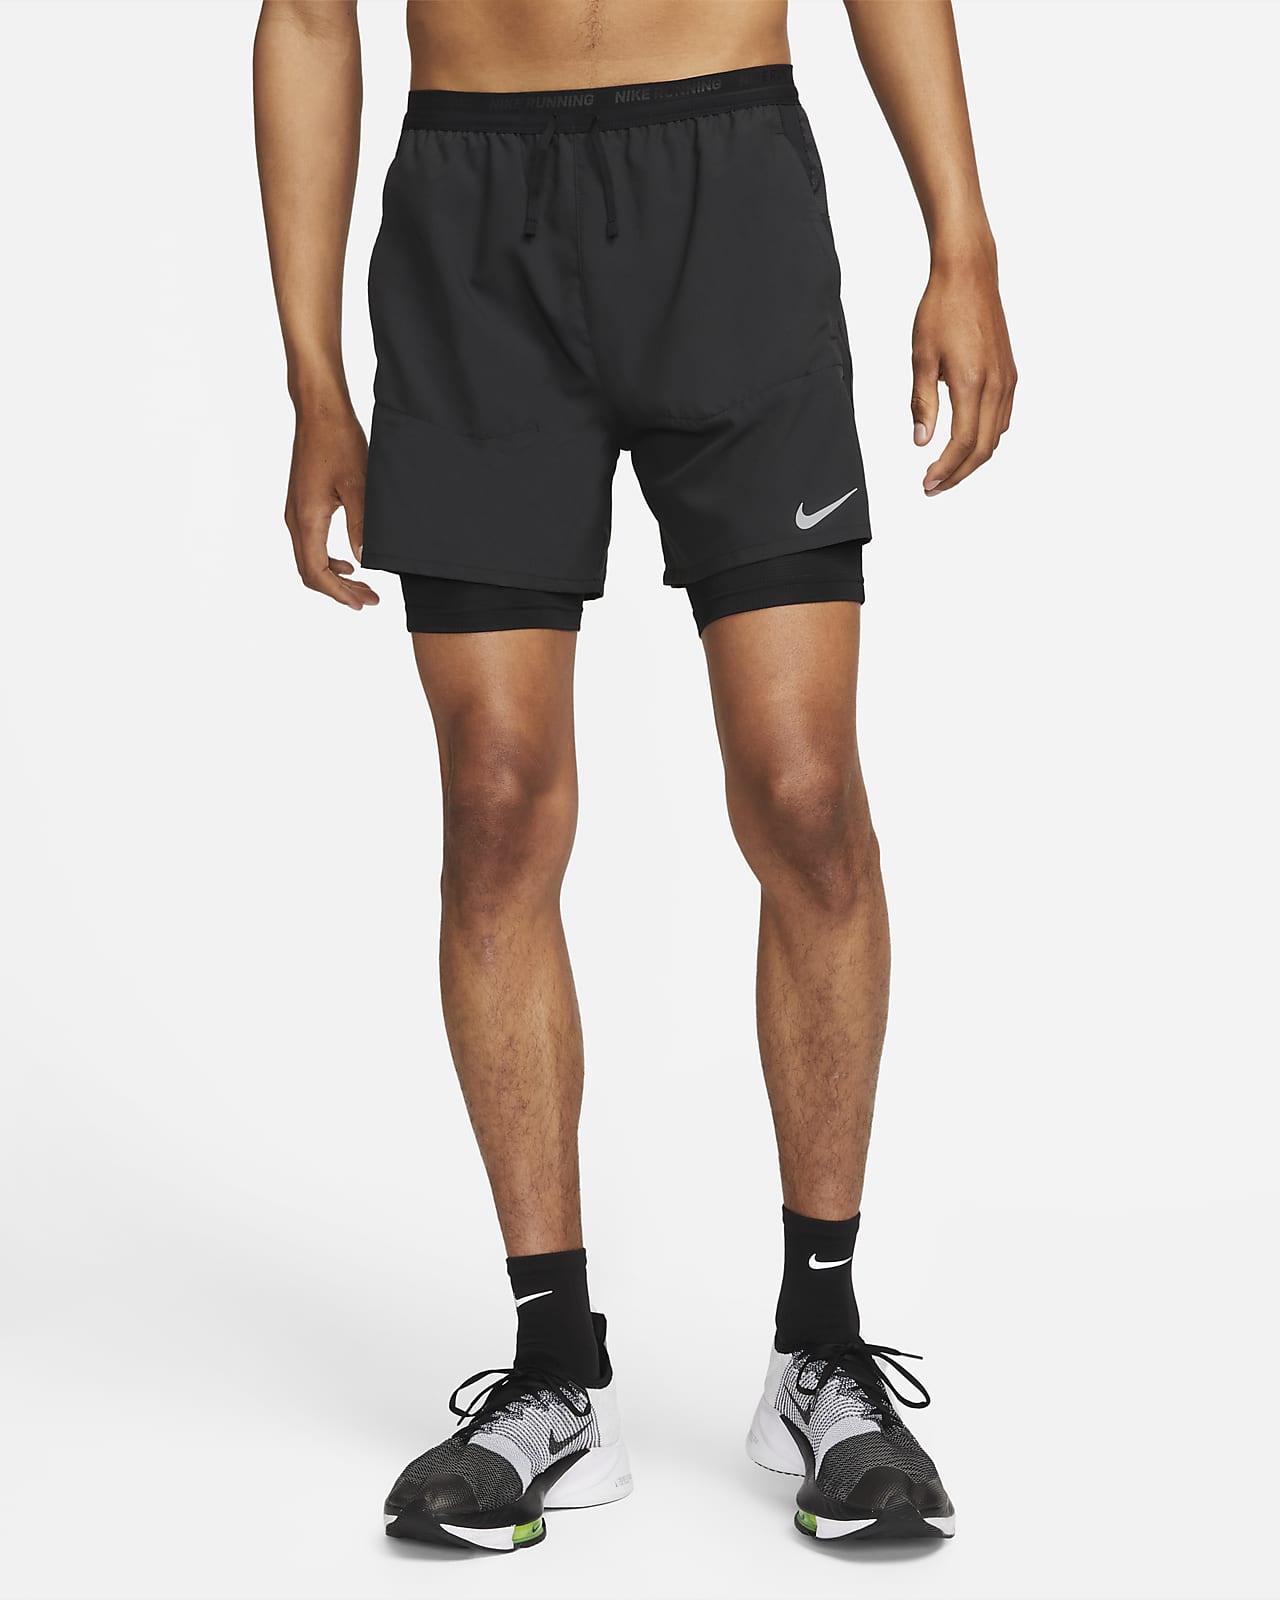 Shorts de running híbridos Dri-FIT de cm para hombre Nike Stride. Nike .com